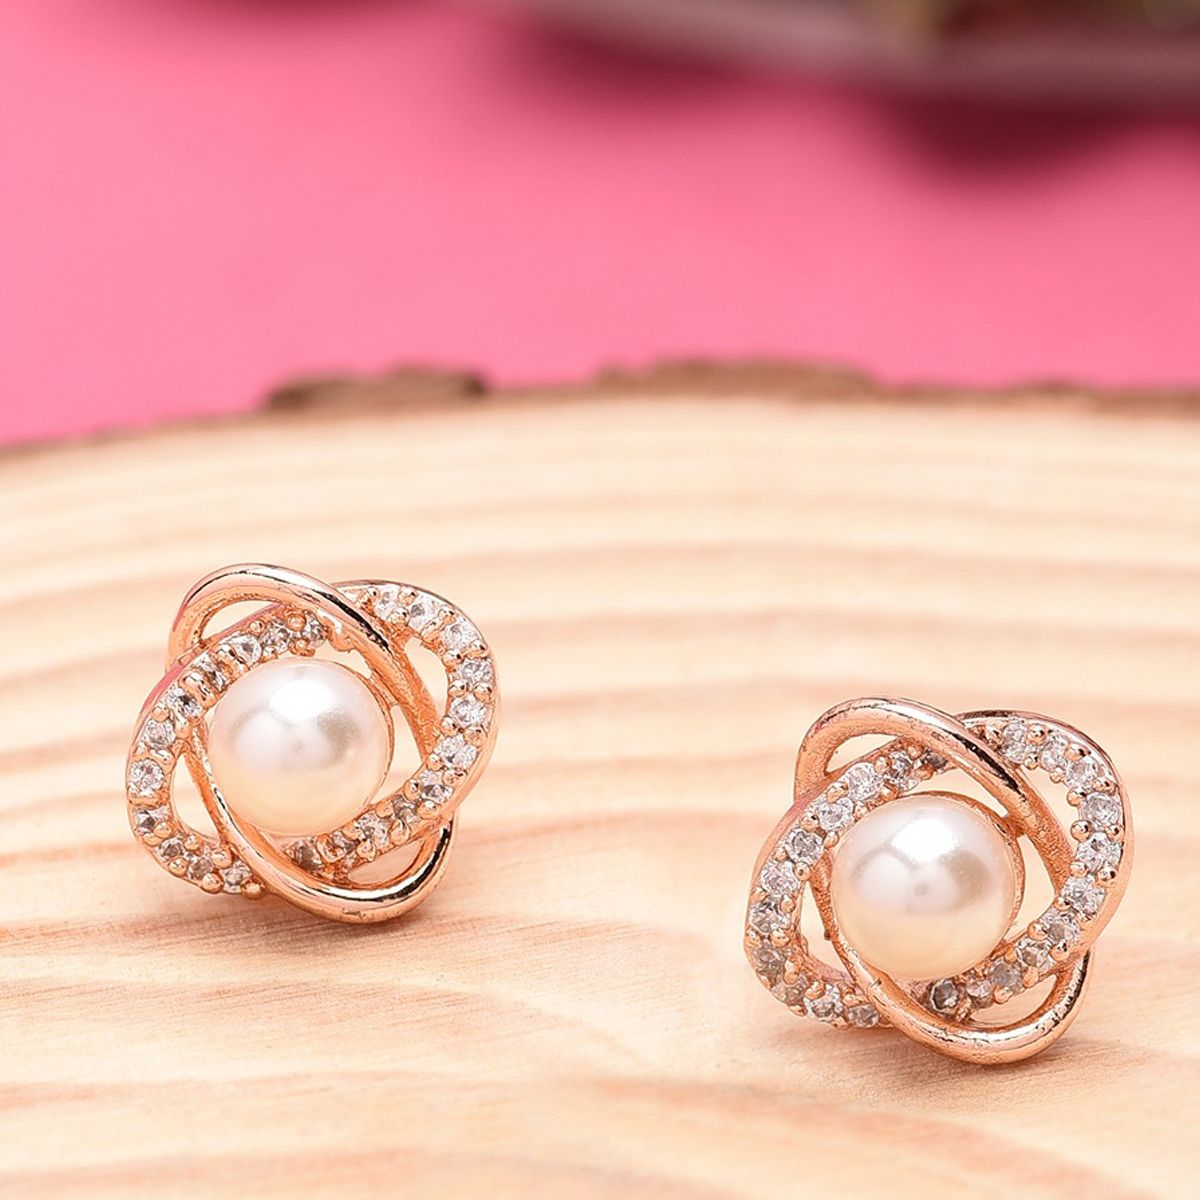 Buy Pearl Silver Earrings Online at Jaypore.com